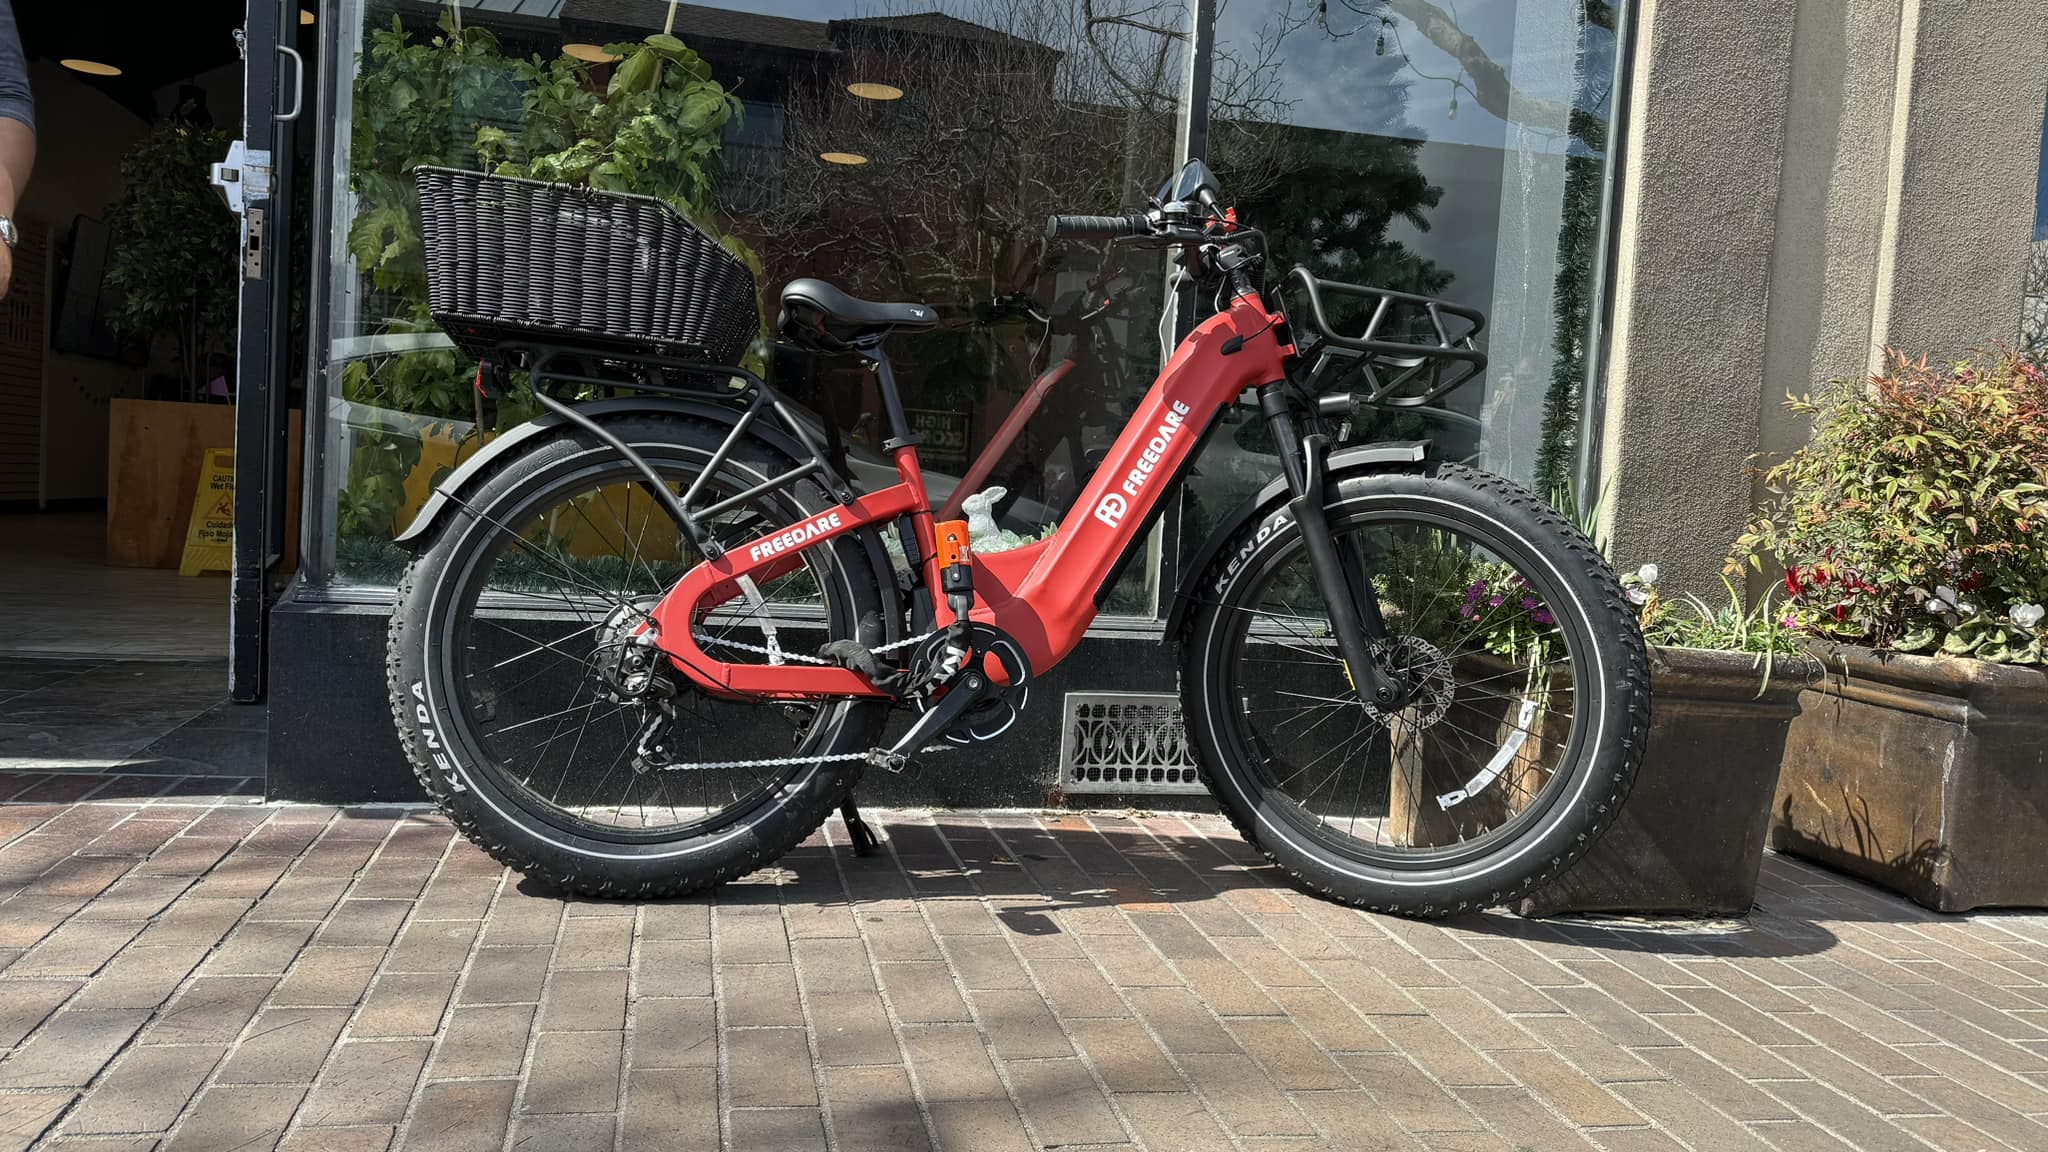 Freedare Eden fat tire electric bike with APP control in USA for sale Red e-bike